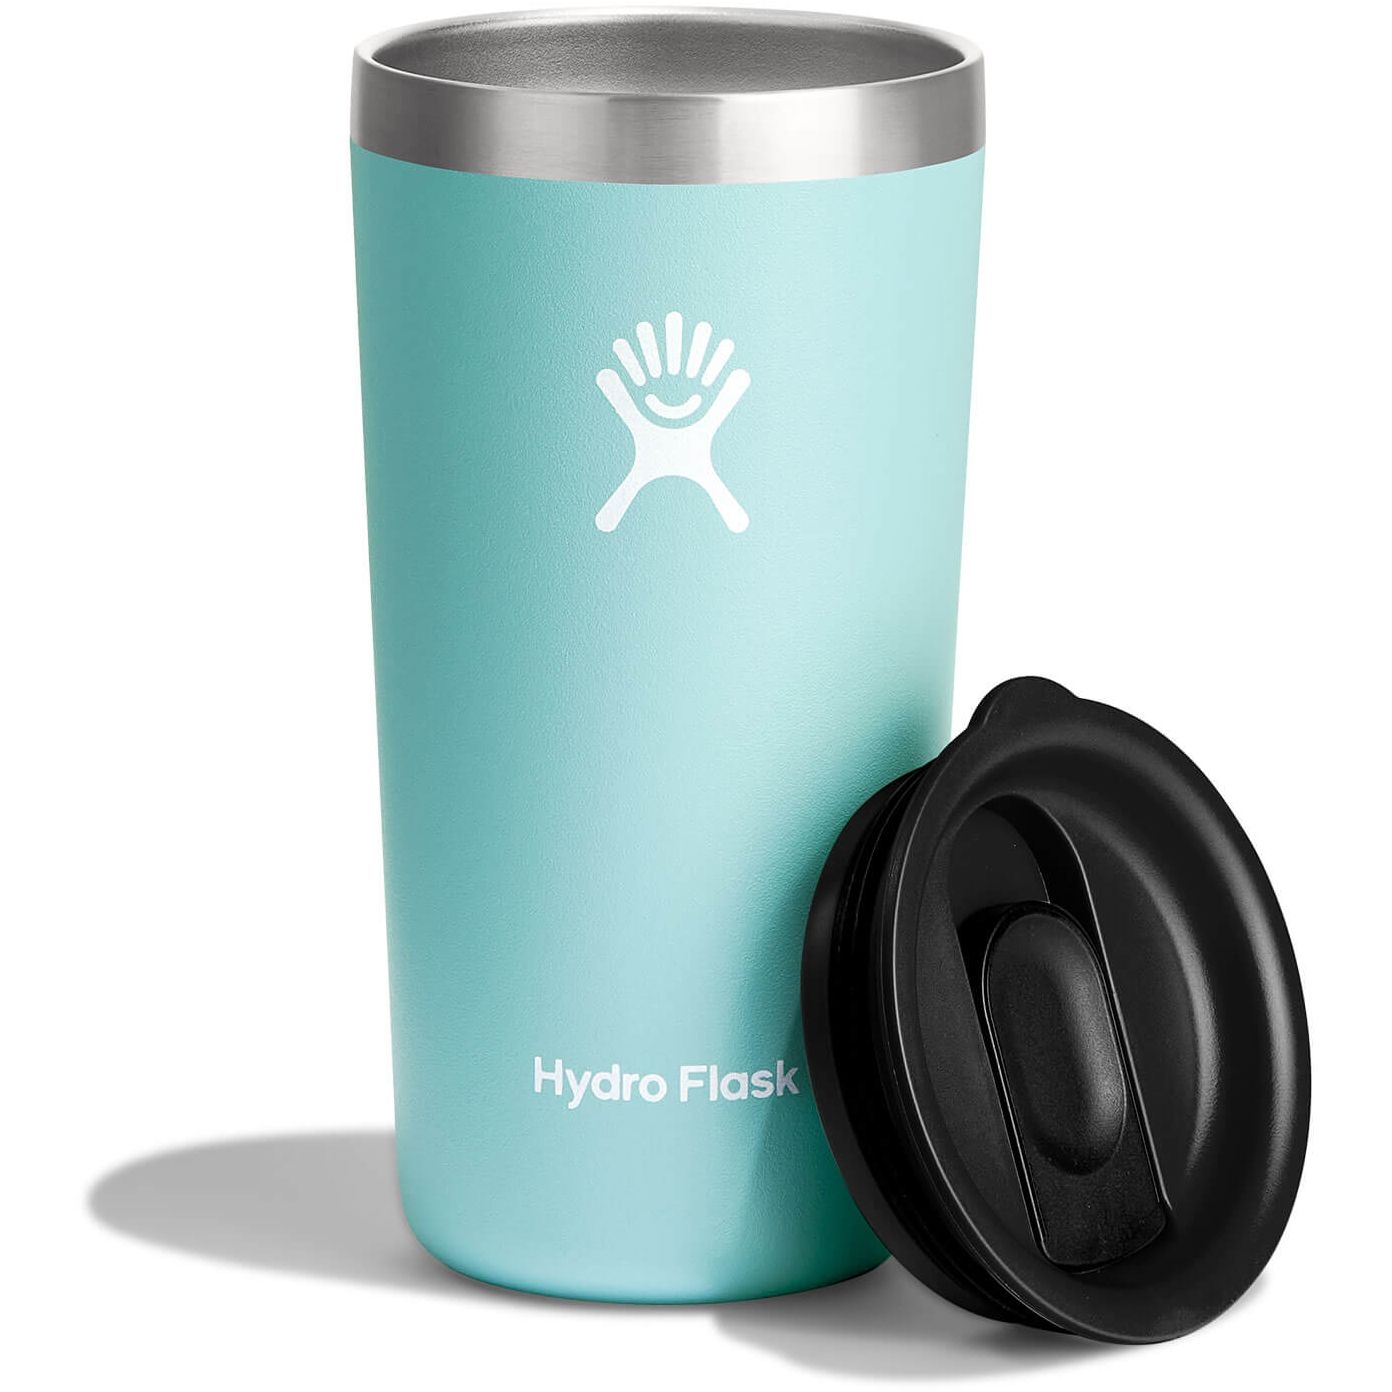 Produktbild von Hydro Flask 12 oz All Around Thermobecher - 354ml - Dew